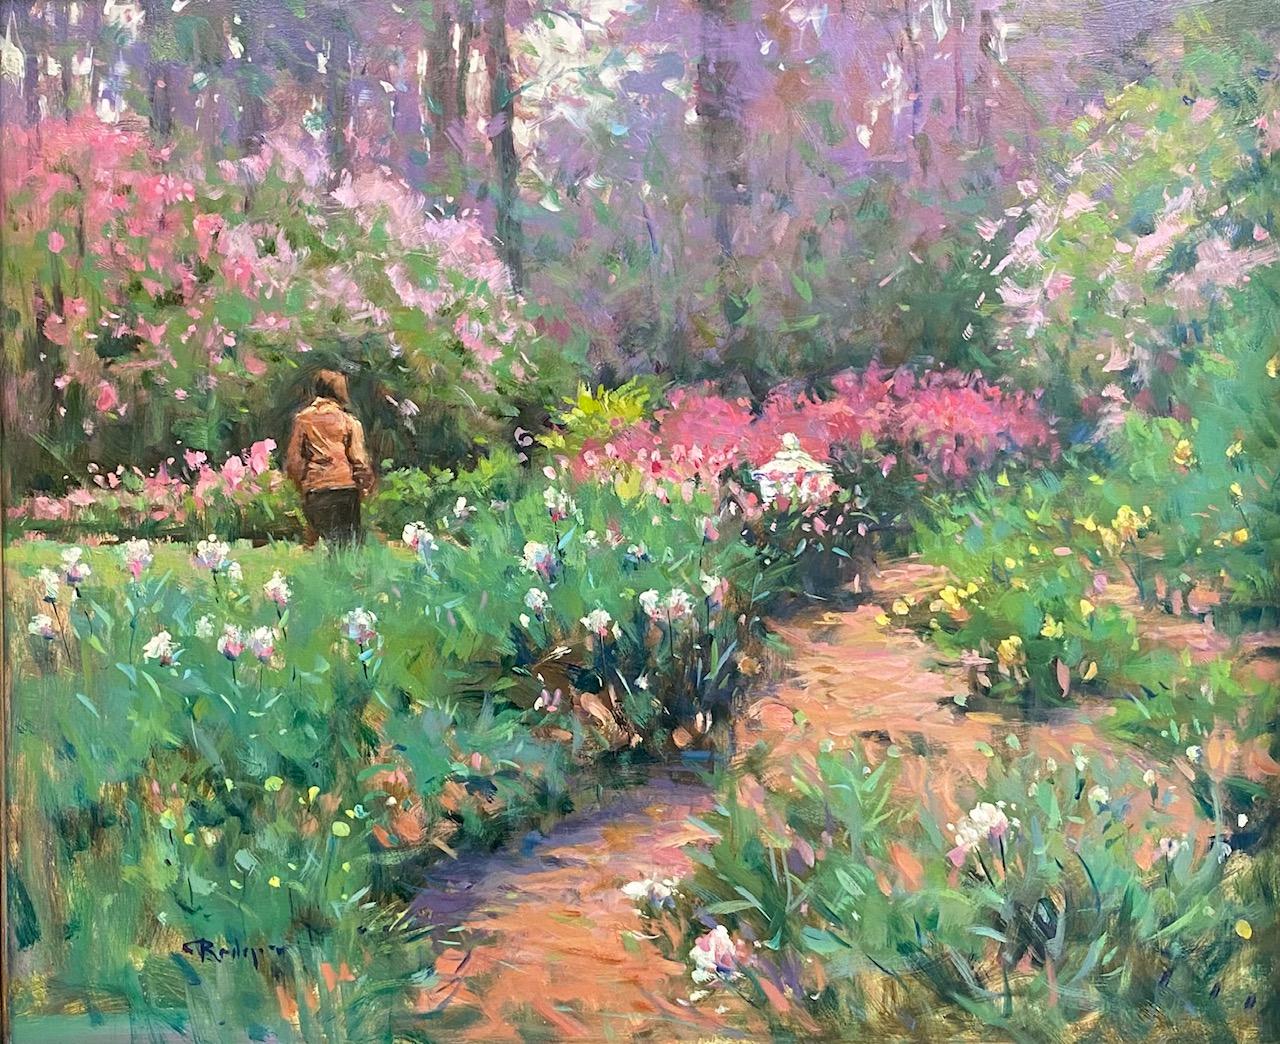 Forest at Winterthur Garden, original impressionistische Blumenlandschaft, 20x24 – Painting von Jim Rodgers